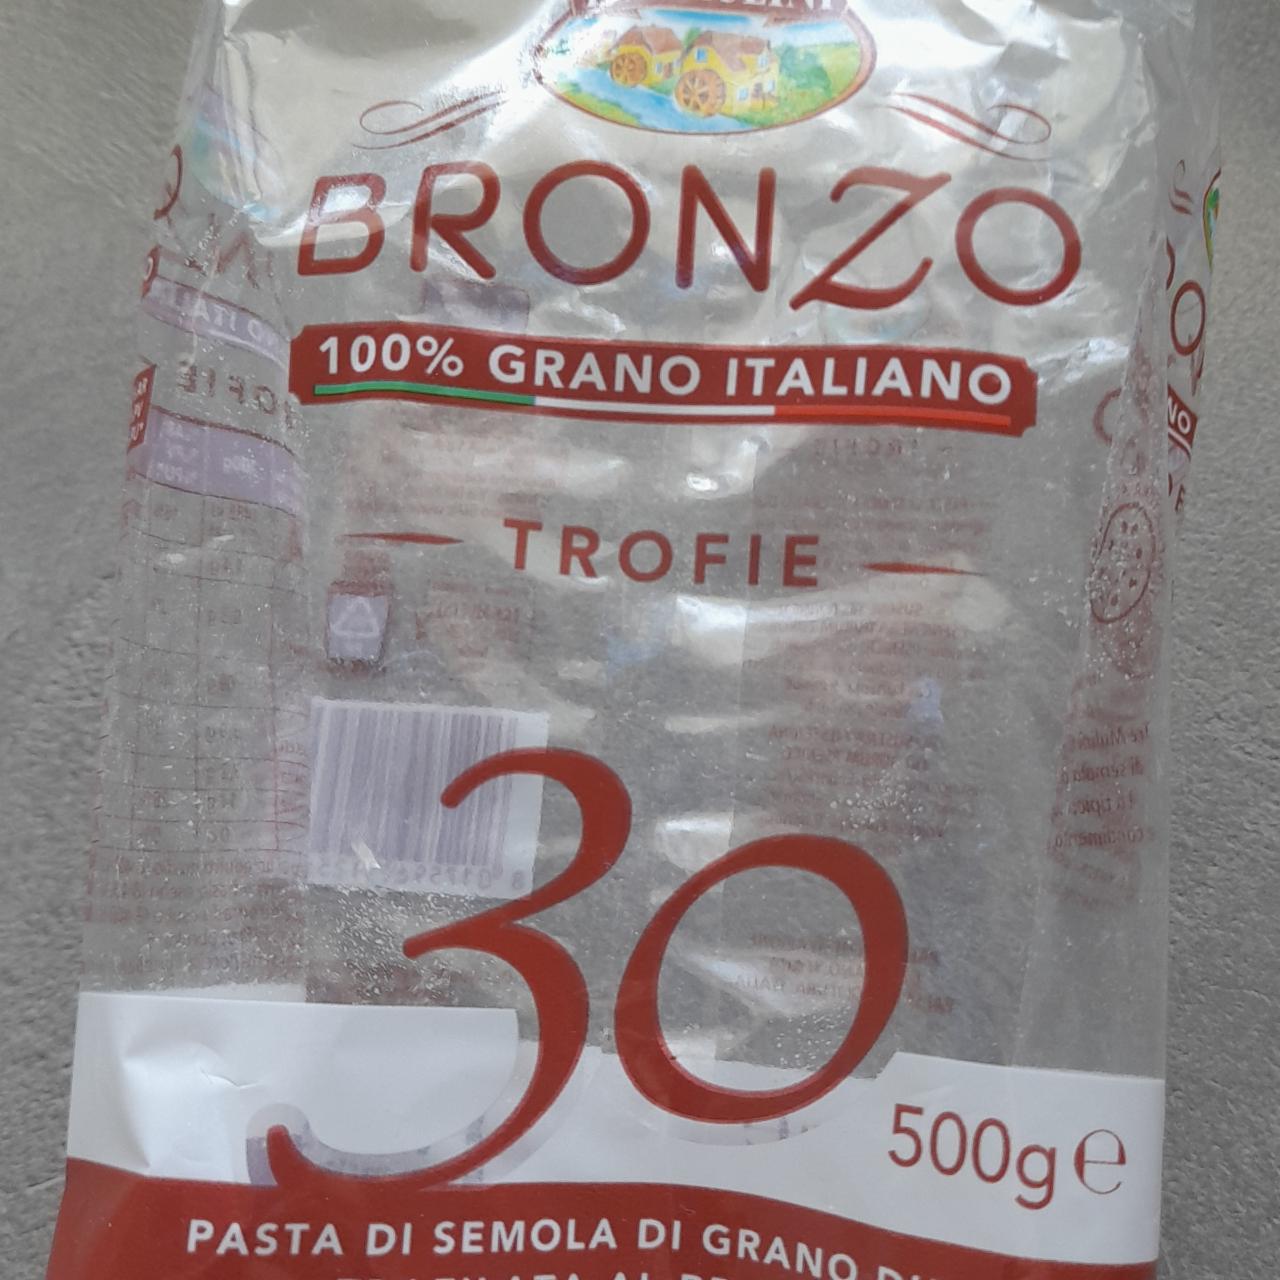 Fotografie - 100% Grano Italiano Trofie Bronzo